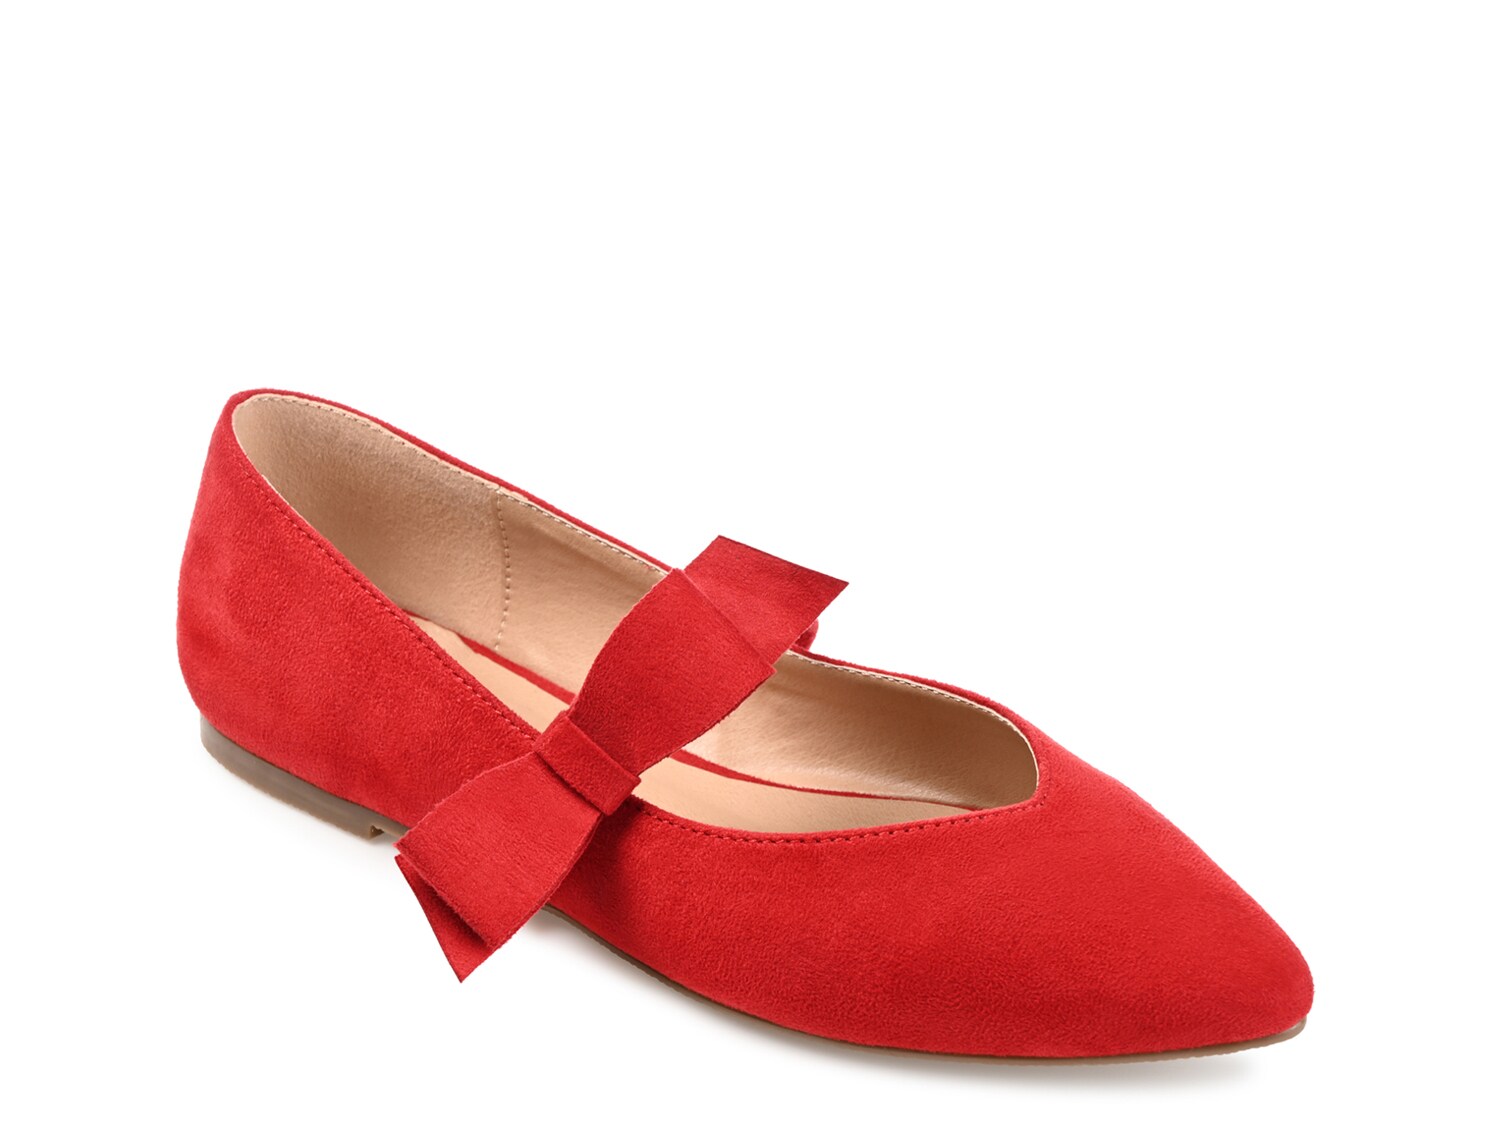 Балетки Journee Collection Aizlynn, красный туфли на плоской подошве sas eden comfort mary jane цвет resin